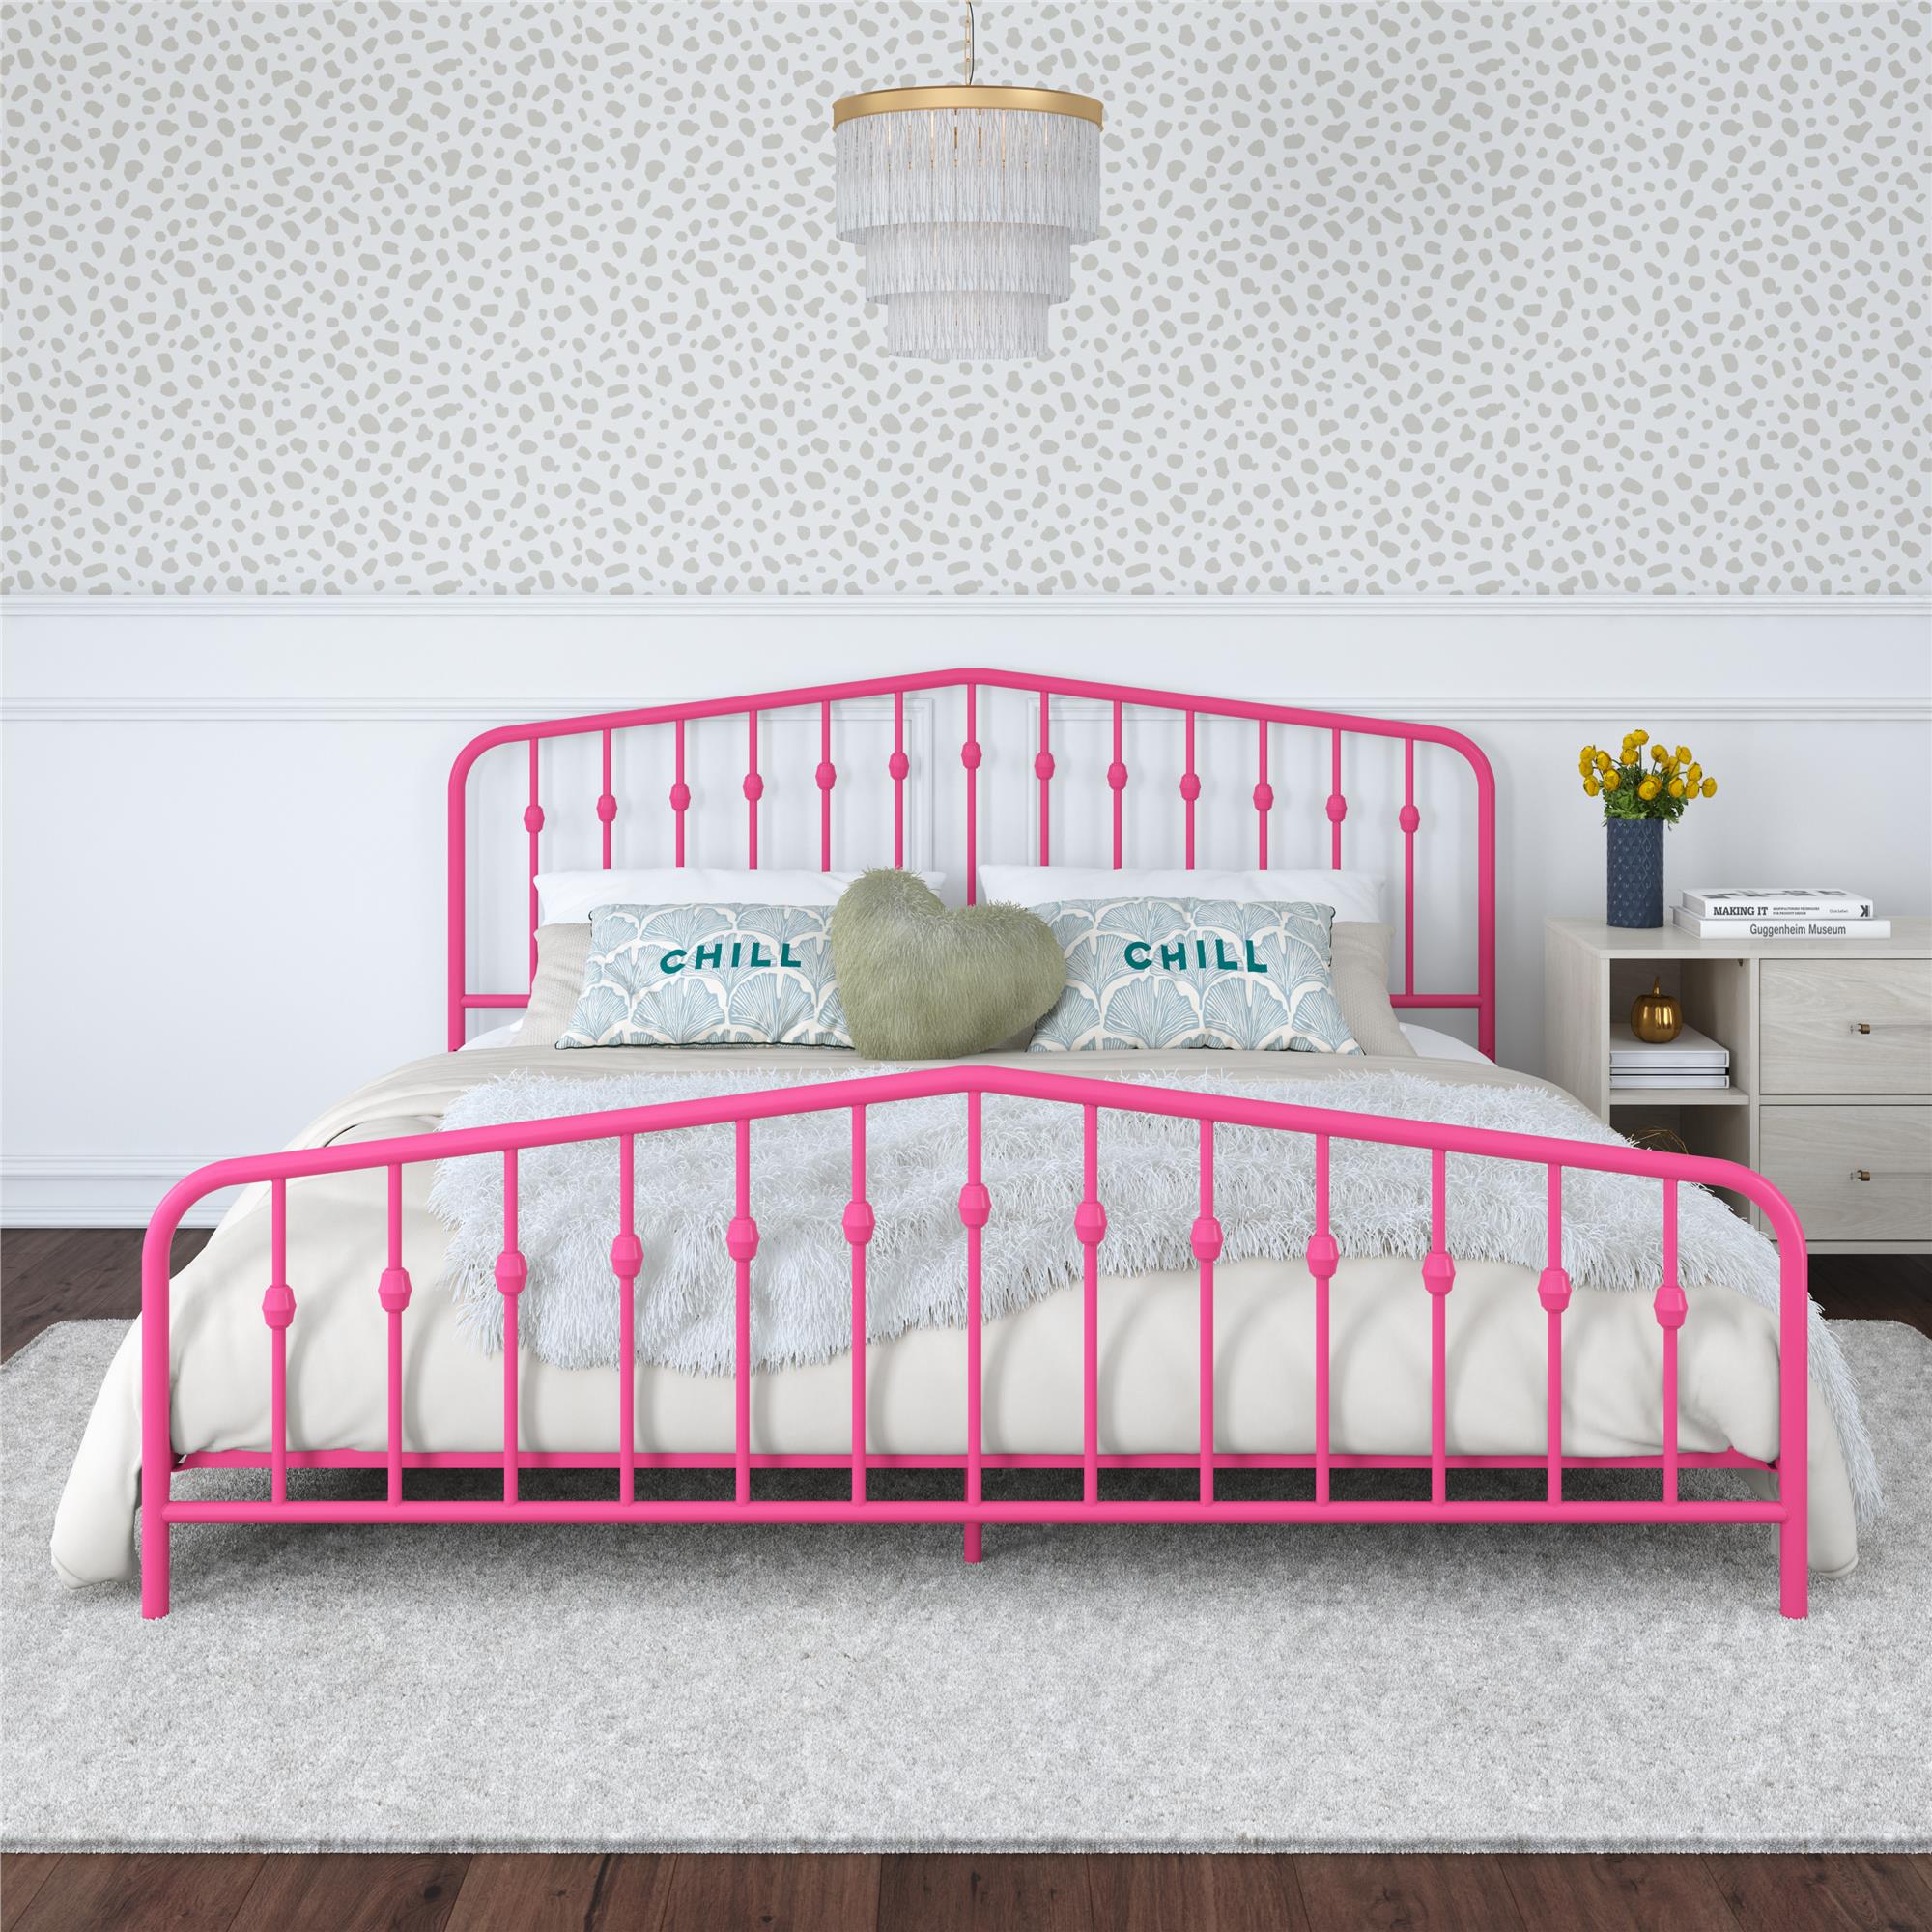 Novogratz Bushwick Metal Platform Bed Frame with Headboard, King, Hot Pink - image 2 of 26